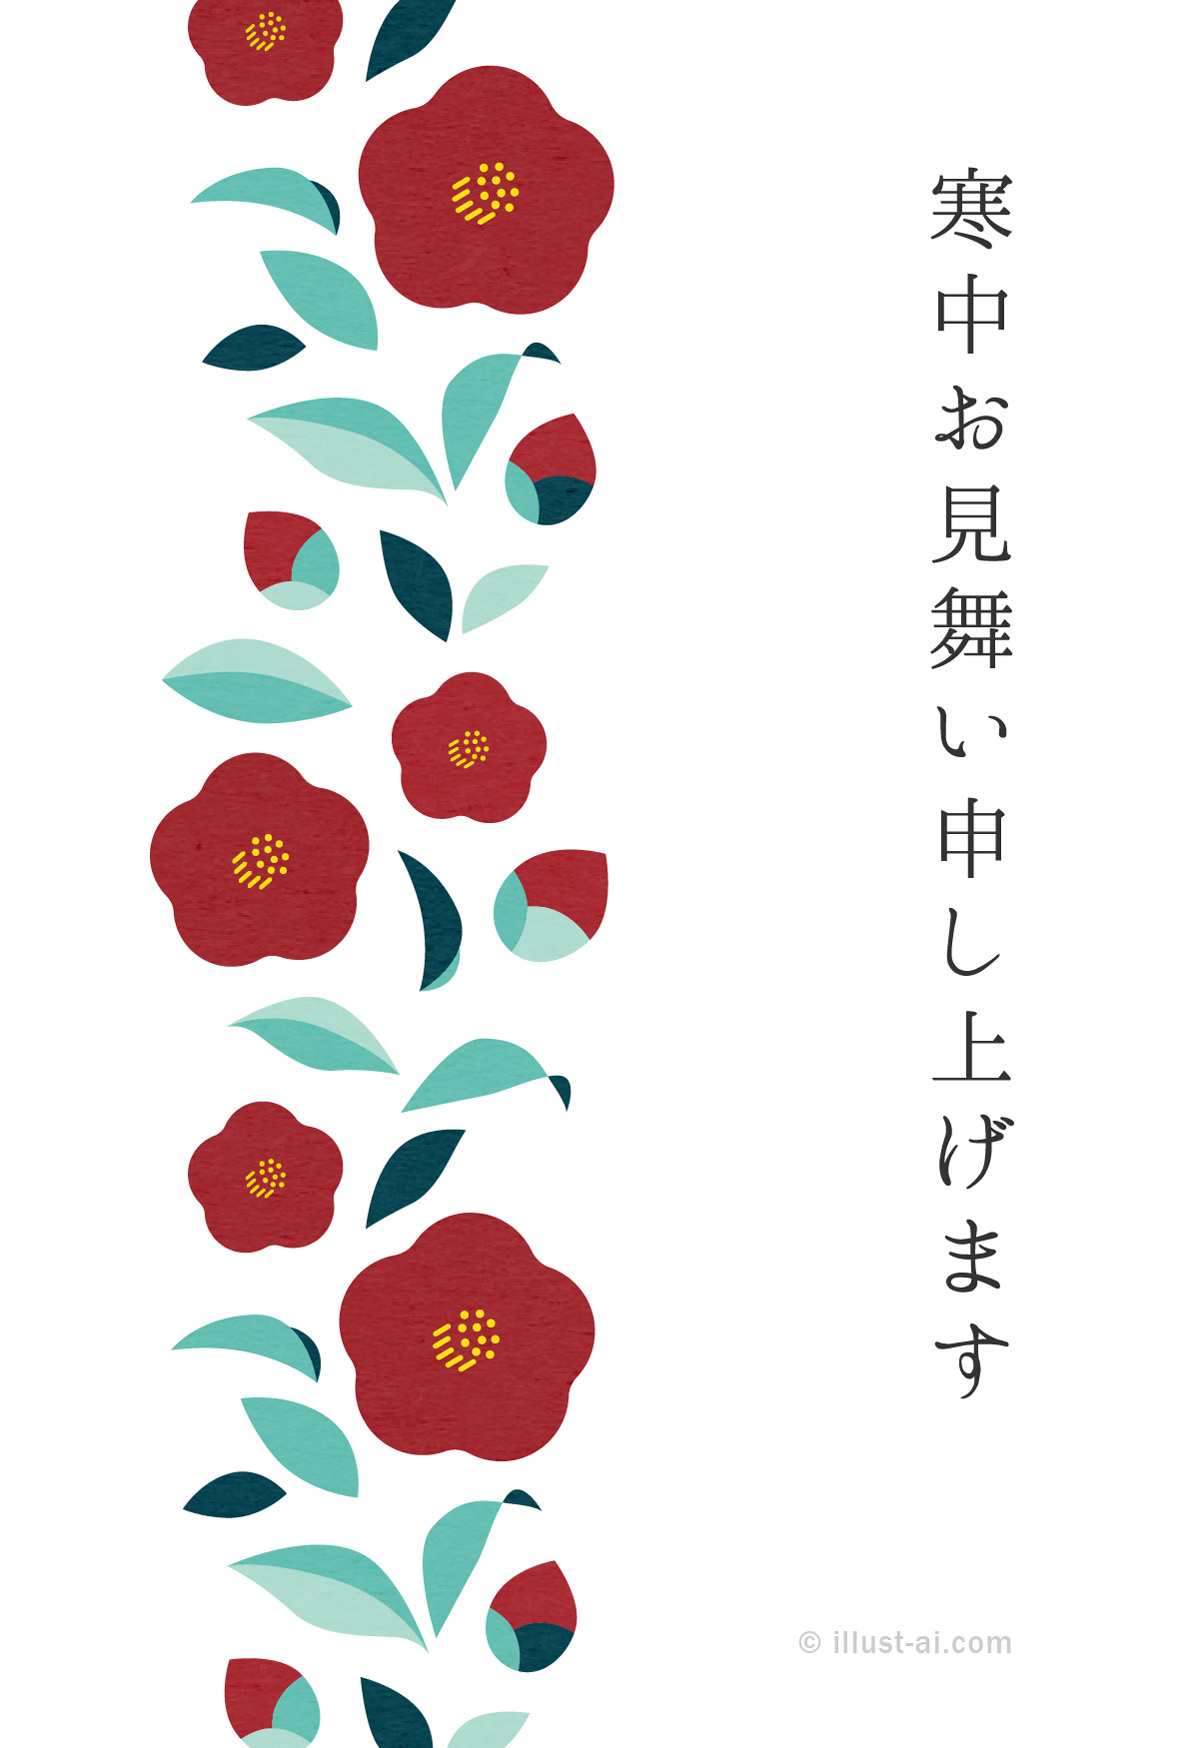 レトロチックな配色の椿のイラスト 寒中お見舞い19 ポストカード イラスト素材サイト イラストareira Postcard Template